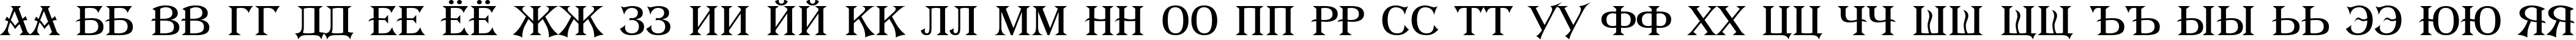 Пример написания русского алфавита шрифтом a_Algerius